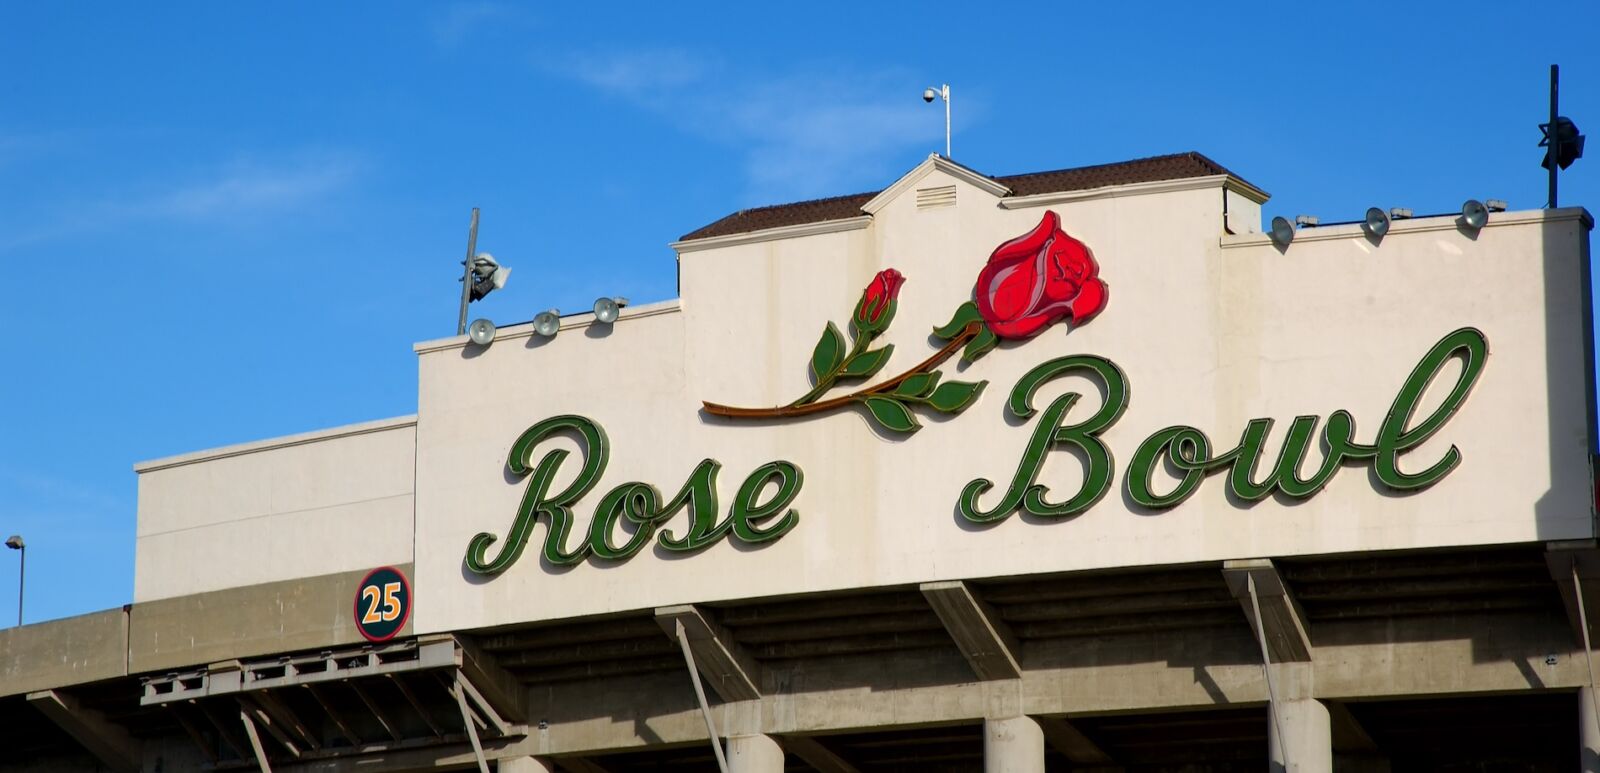 The Rose Bowl in Pasadena, Calif.